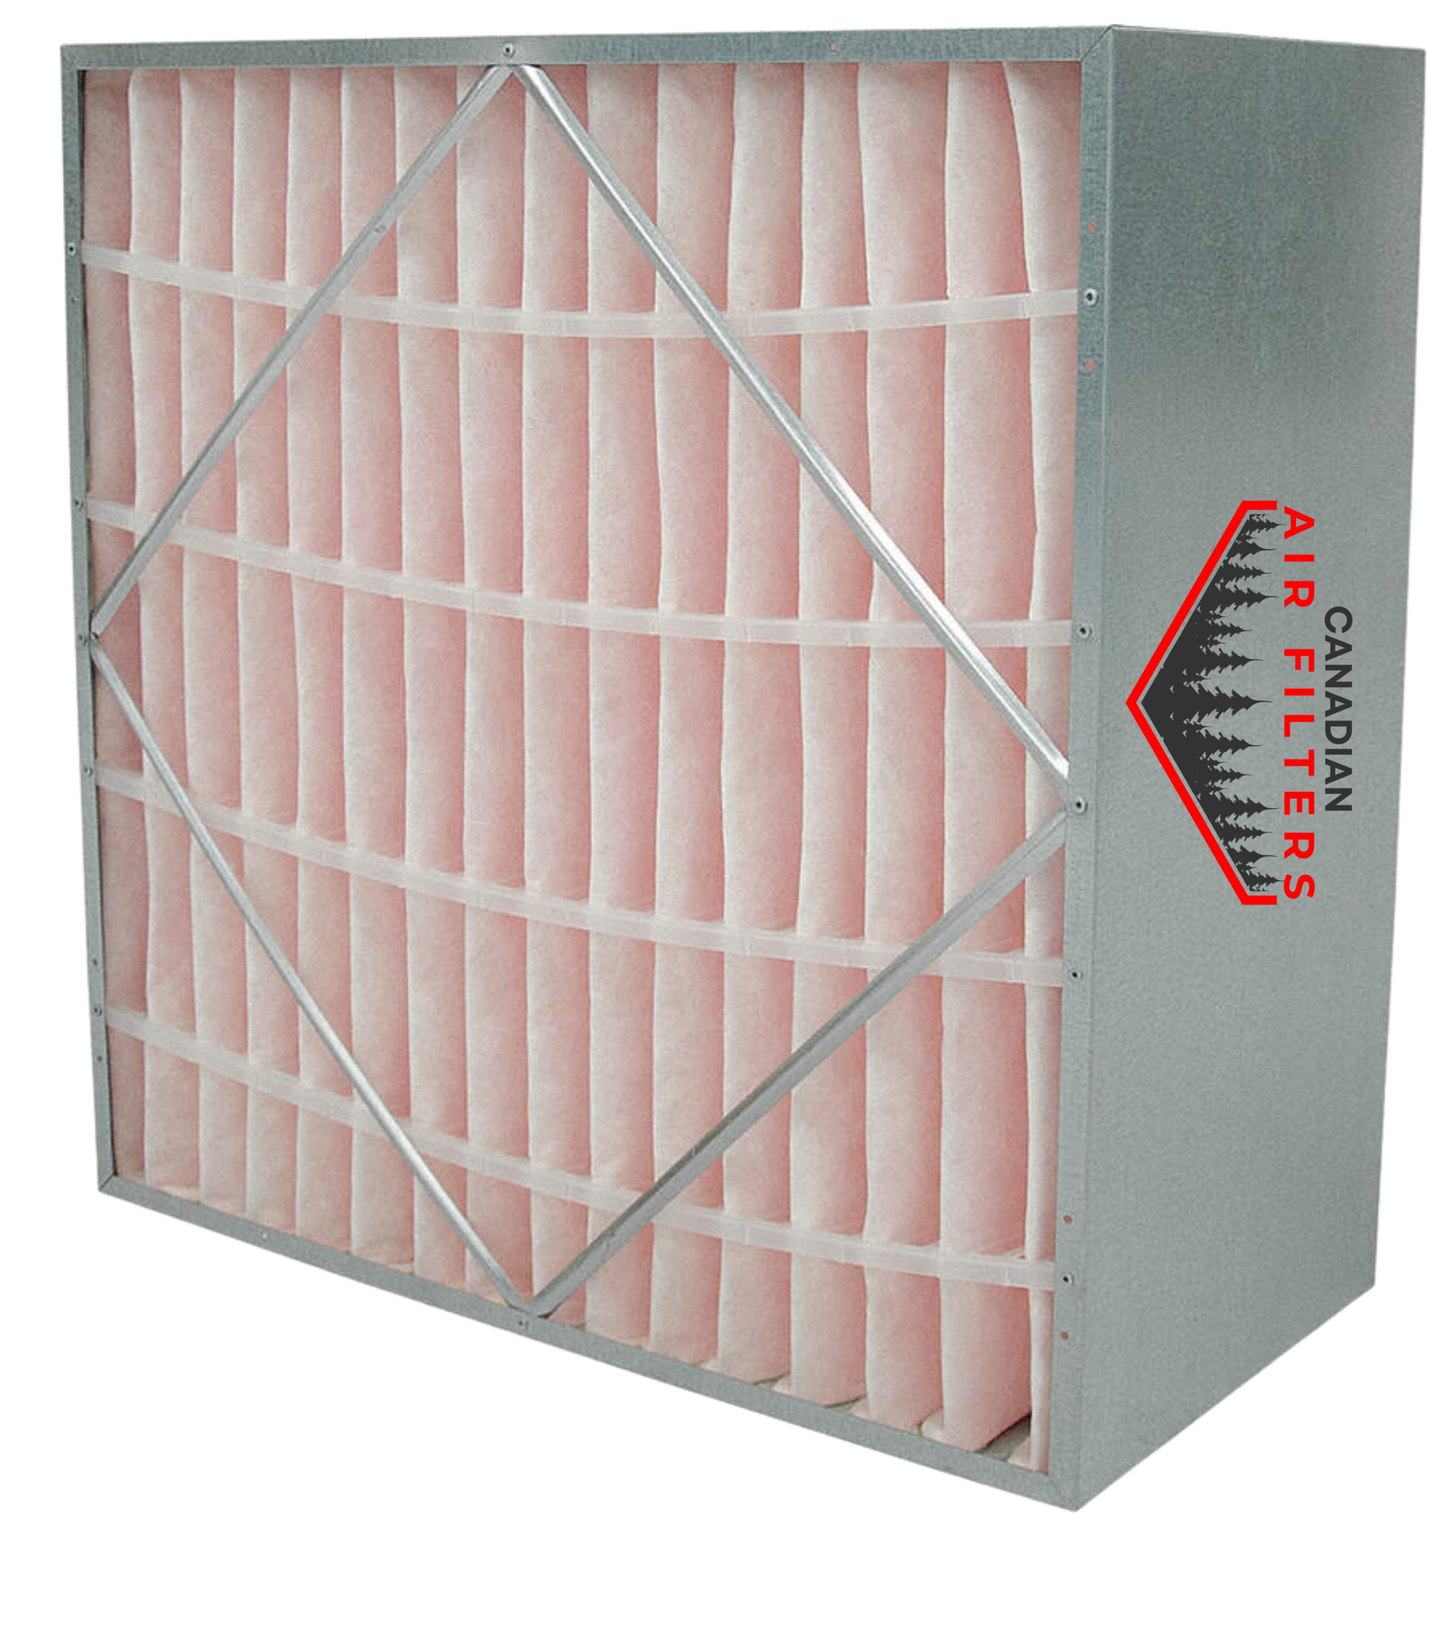 24 x 24 x 12 - Rigid Cell Air Filters Box Style - Merv 11 (Each)